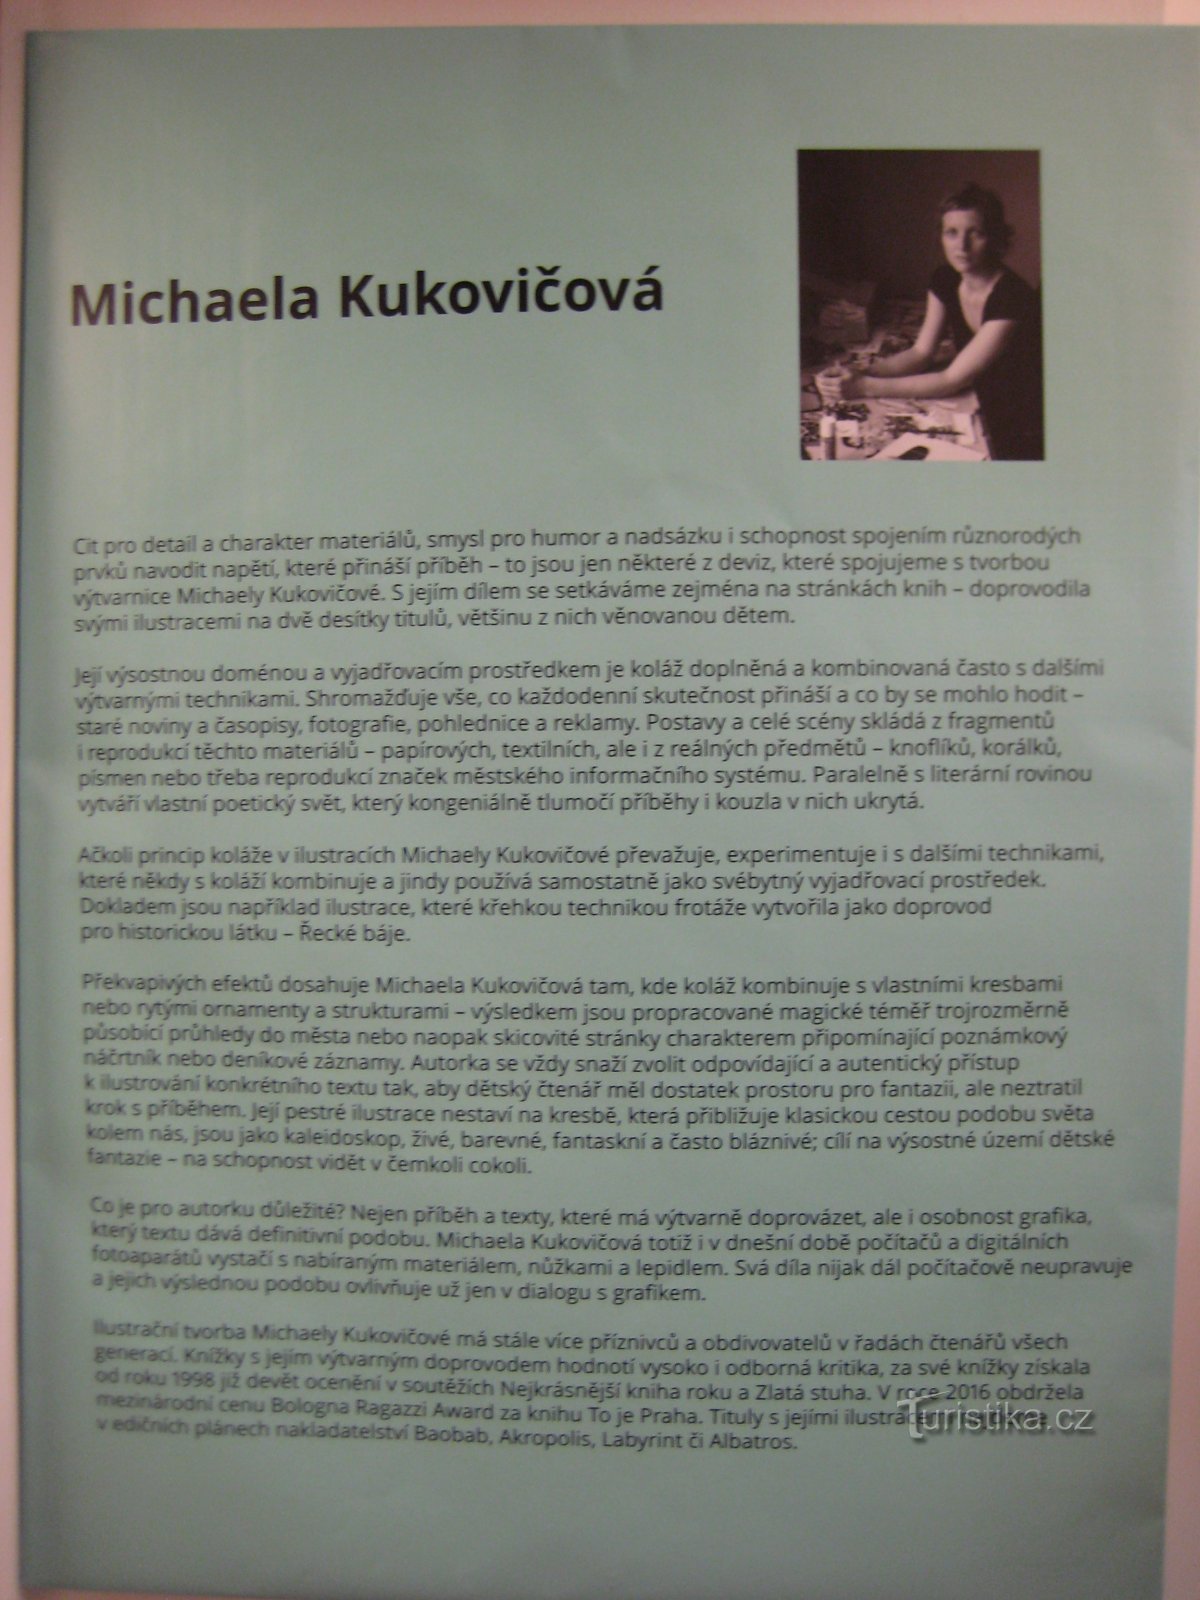 Triển lãm Michaela Kukovičová - Bubluch, Duchnous và những người khác - Khuỷu tay